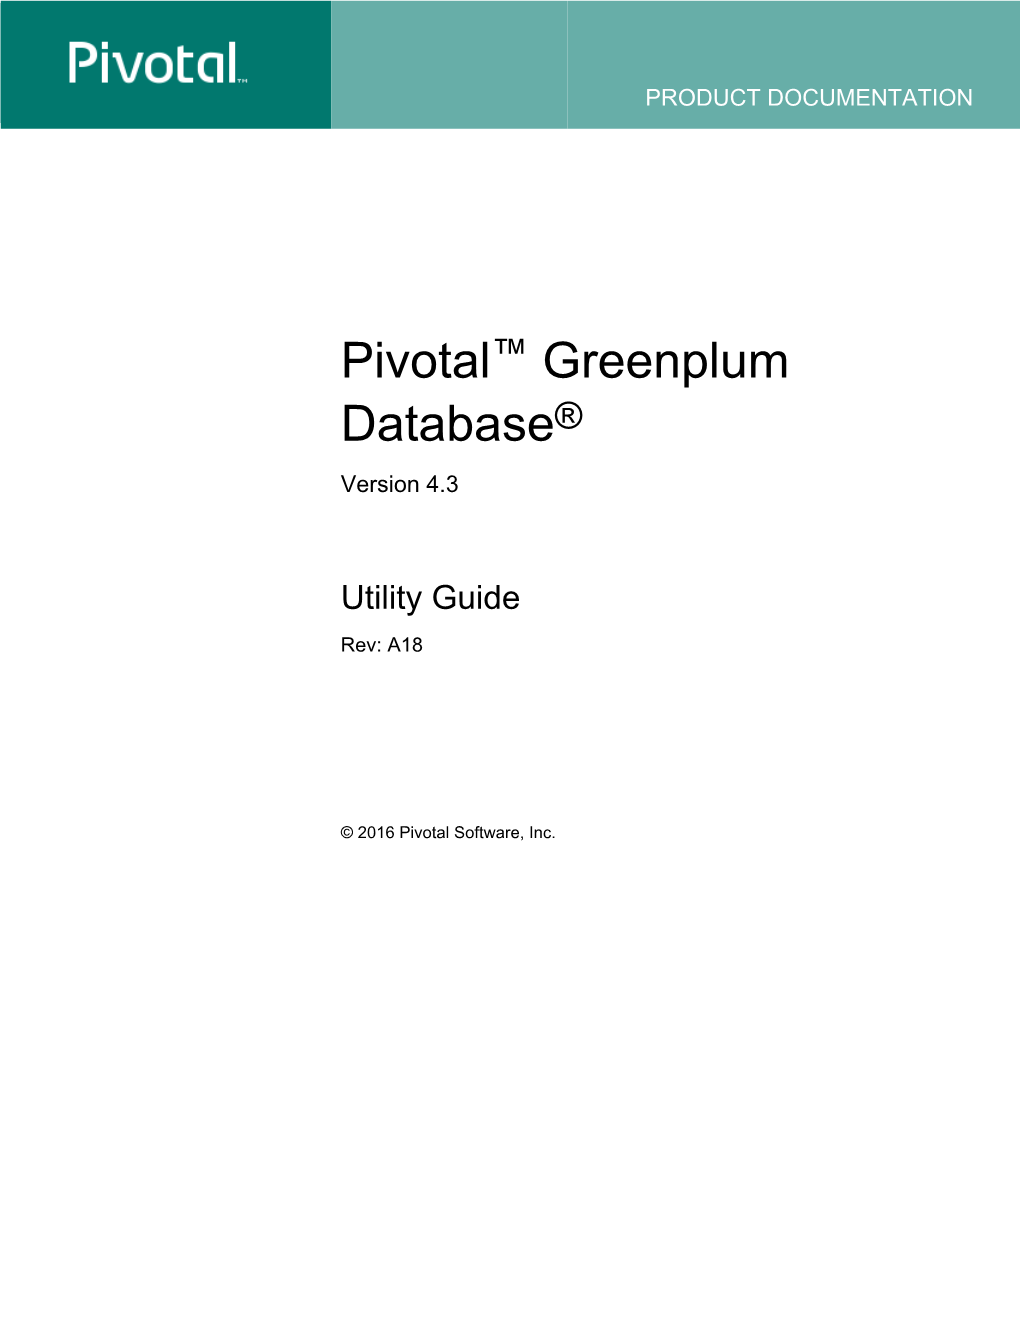 Utility Guide (Rev. A18)